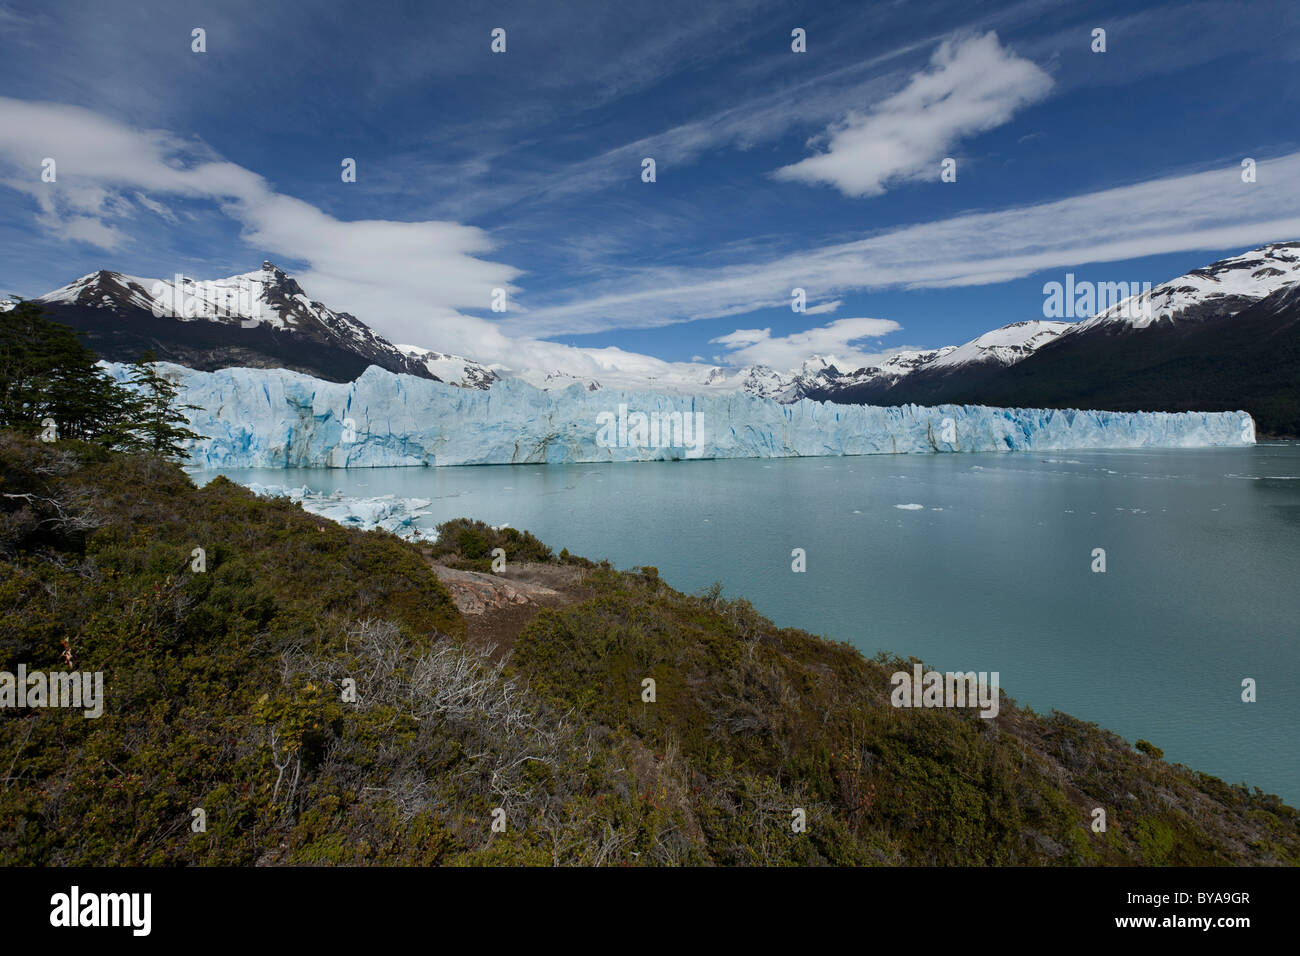 Perito Moreno Glacier, Parque Nacional Los Glaciares, Los Glaciares National Park, Patagonia, Argentina, South America Stock Photo